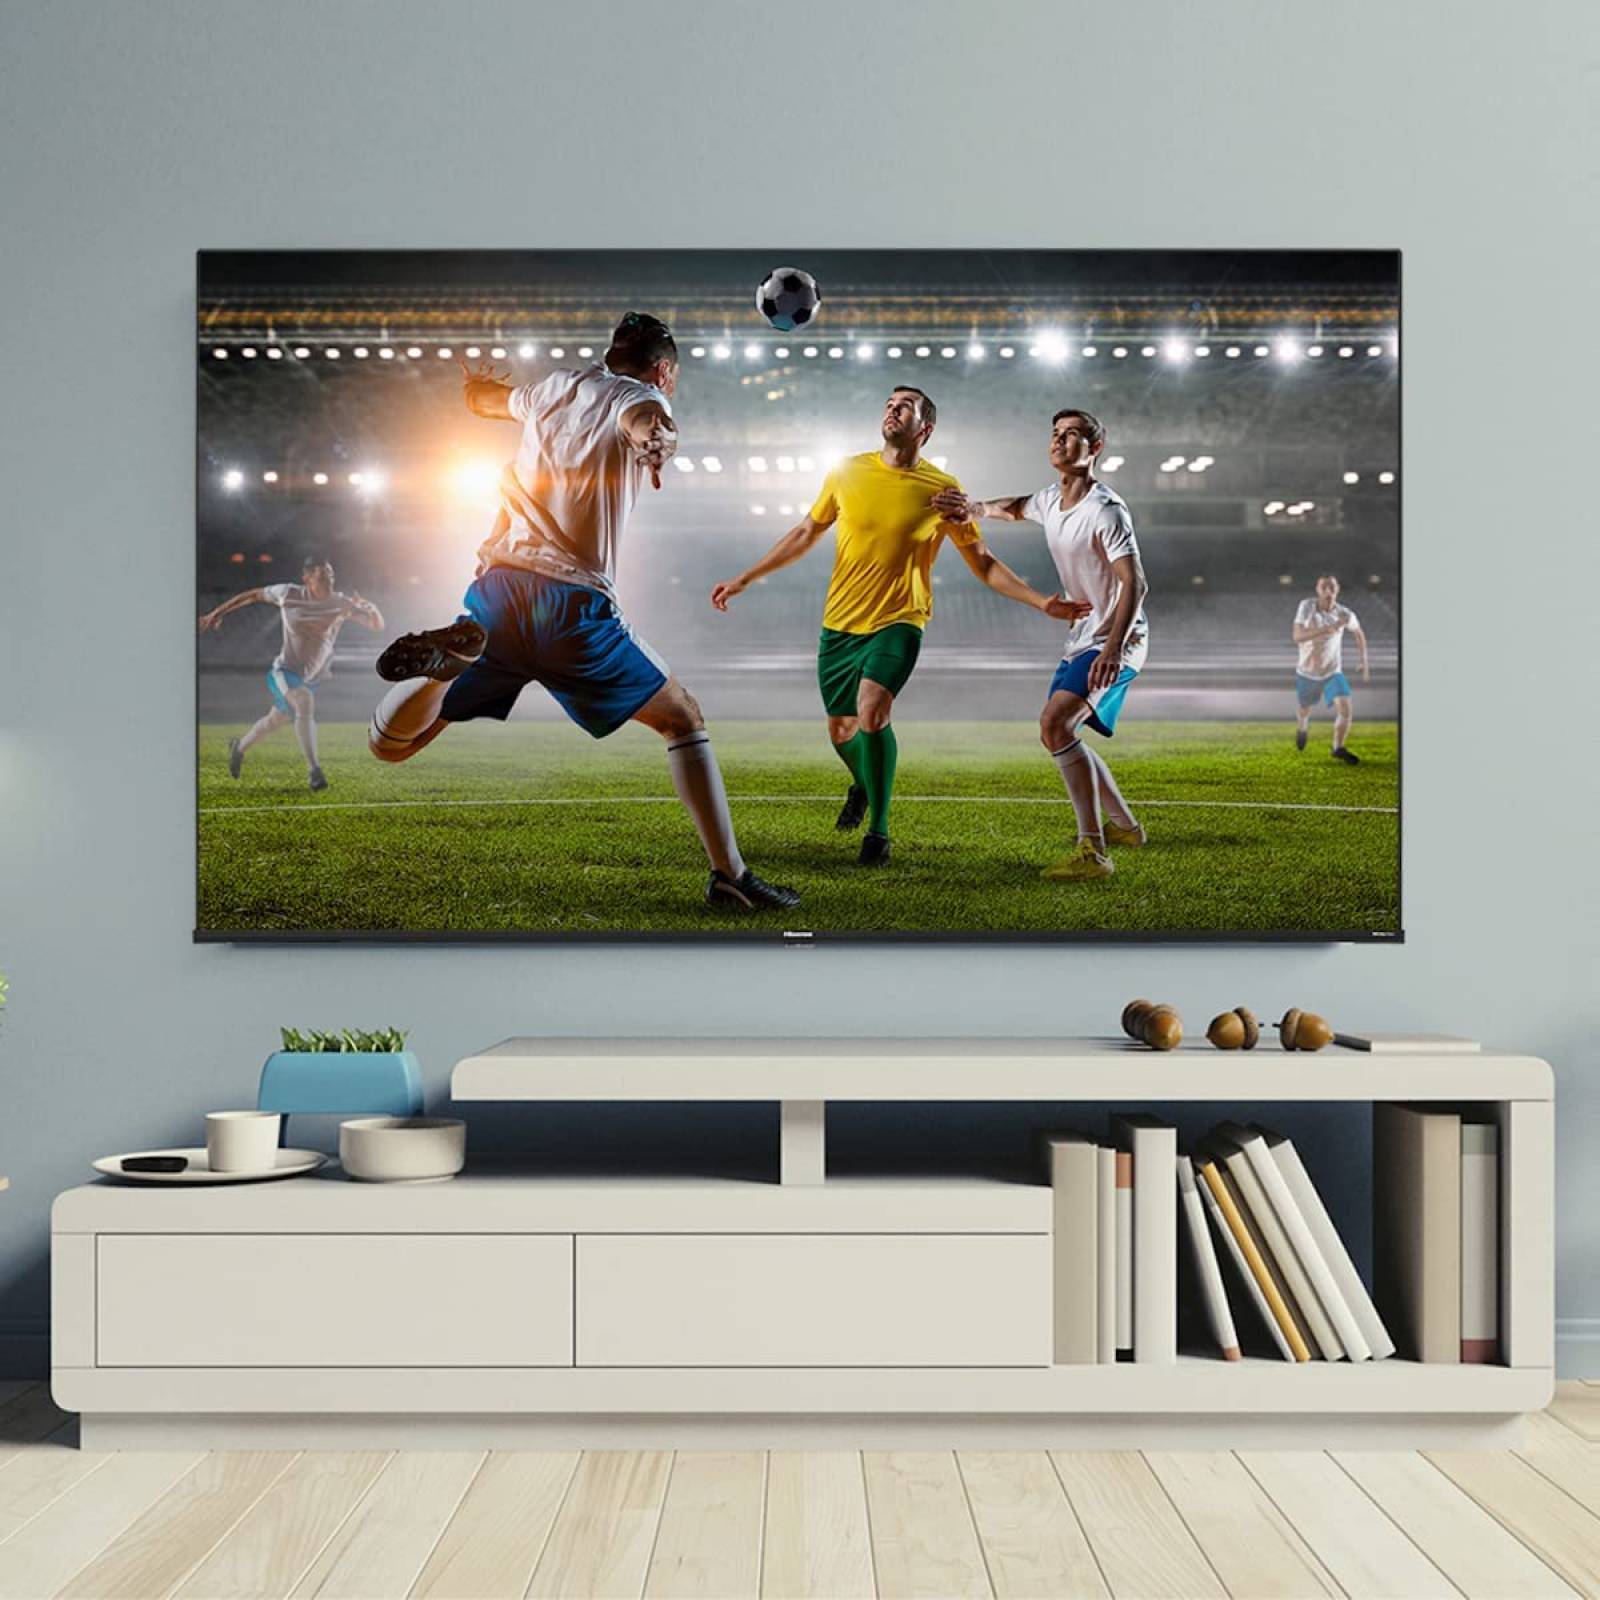 Pantalla smart TV portátil Hisense 50A65HV LED Vidaa 4K 50